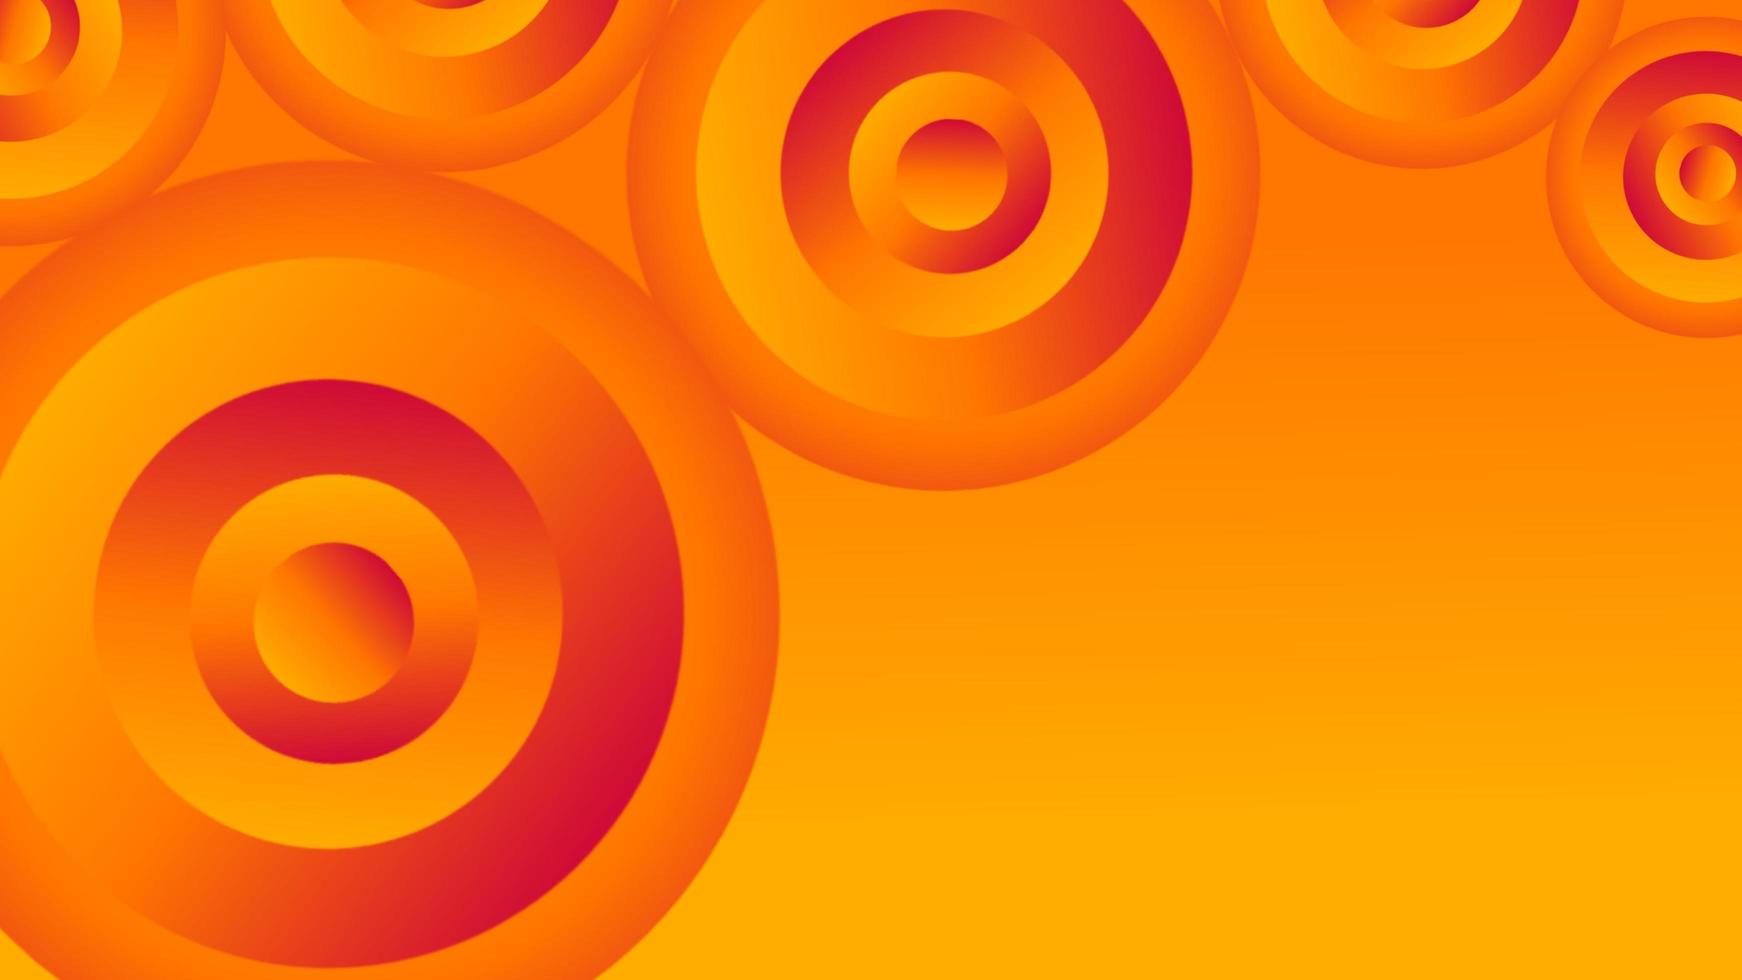 Tận hưởng hình nền đồ họa hình học vòng tròn màu cam và vàng, sự kết hợp độc đáo giữa màu sắc và hình học giúp bạn có bản thuyết trình sáng tạo và đẹp mắt, thu hút sự chú ý của khán giả và giới chuyên môn.